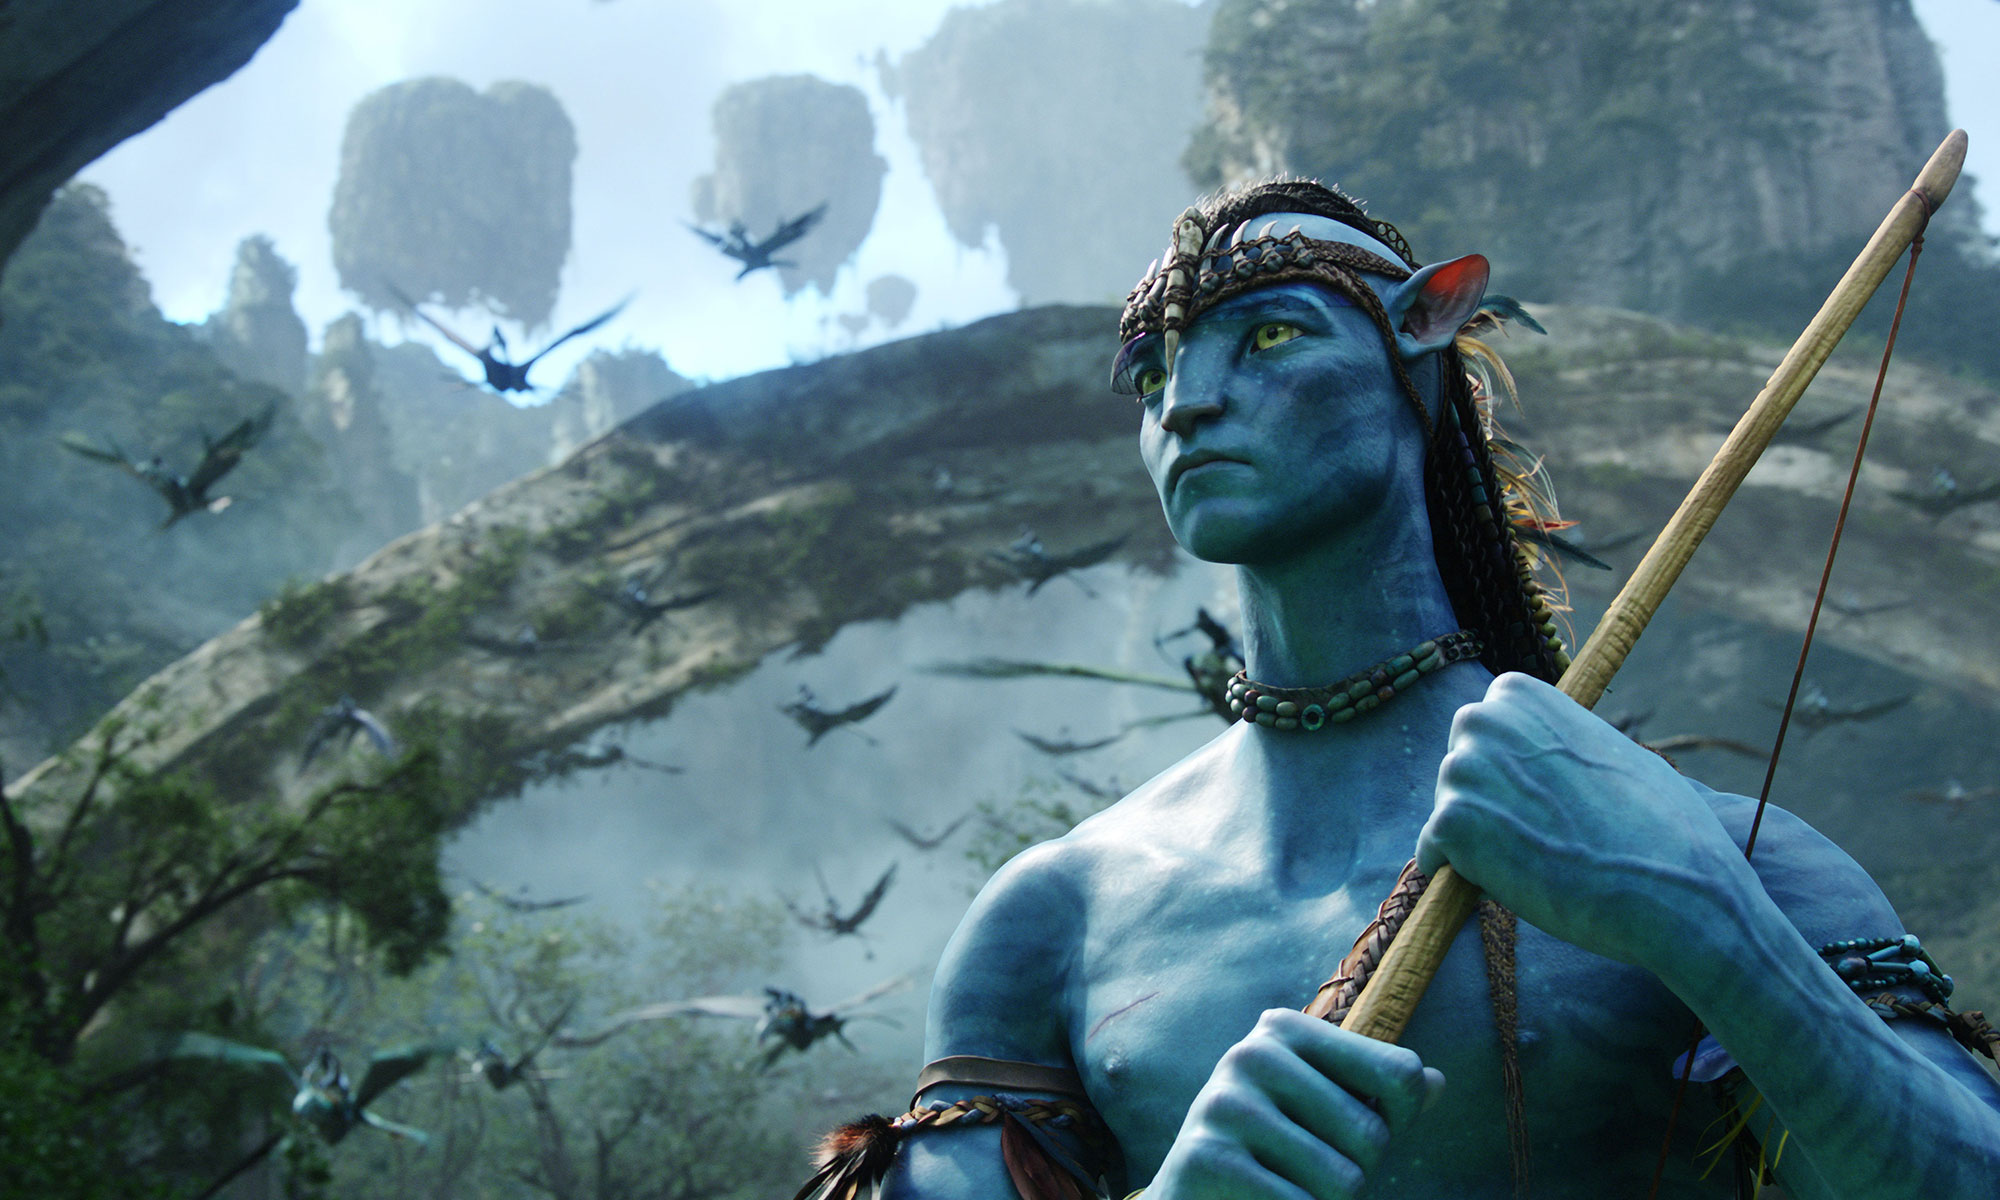 Avatar 2 đang gây xúc động toàn cầu bởi tên gọi, dàn diễn viên, và ngày phát hành được chờ đợi. Hãy cập nhật những tin tức mới nhất về phim này để sẵn sàng với những trải nghiệm tuyệt vời trong tương lai.